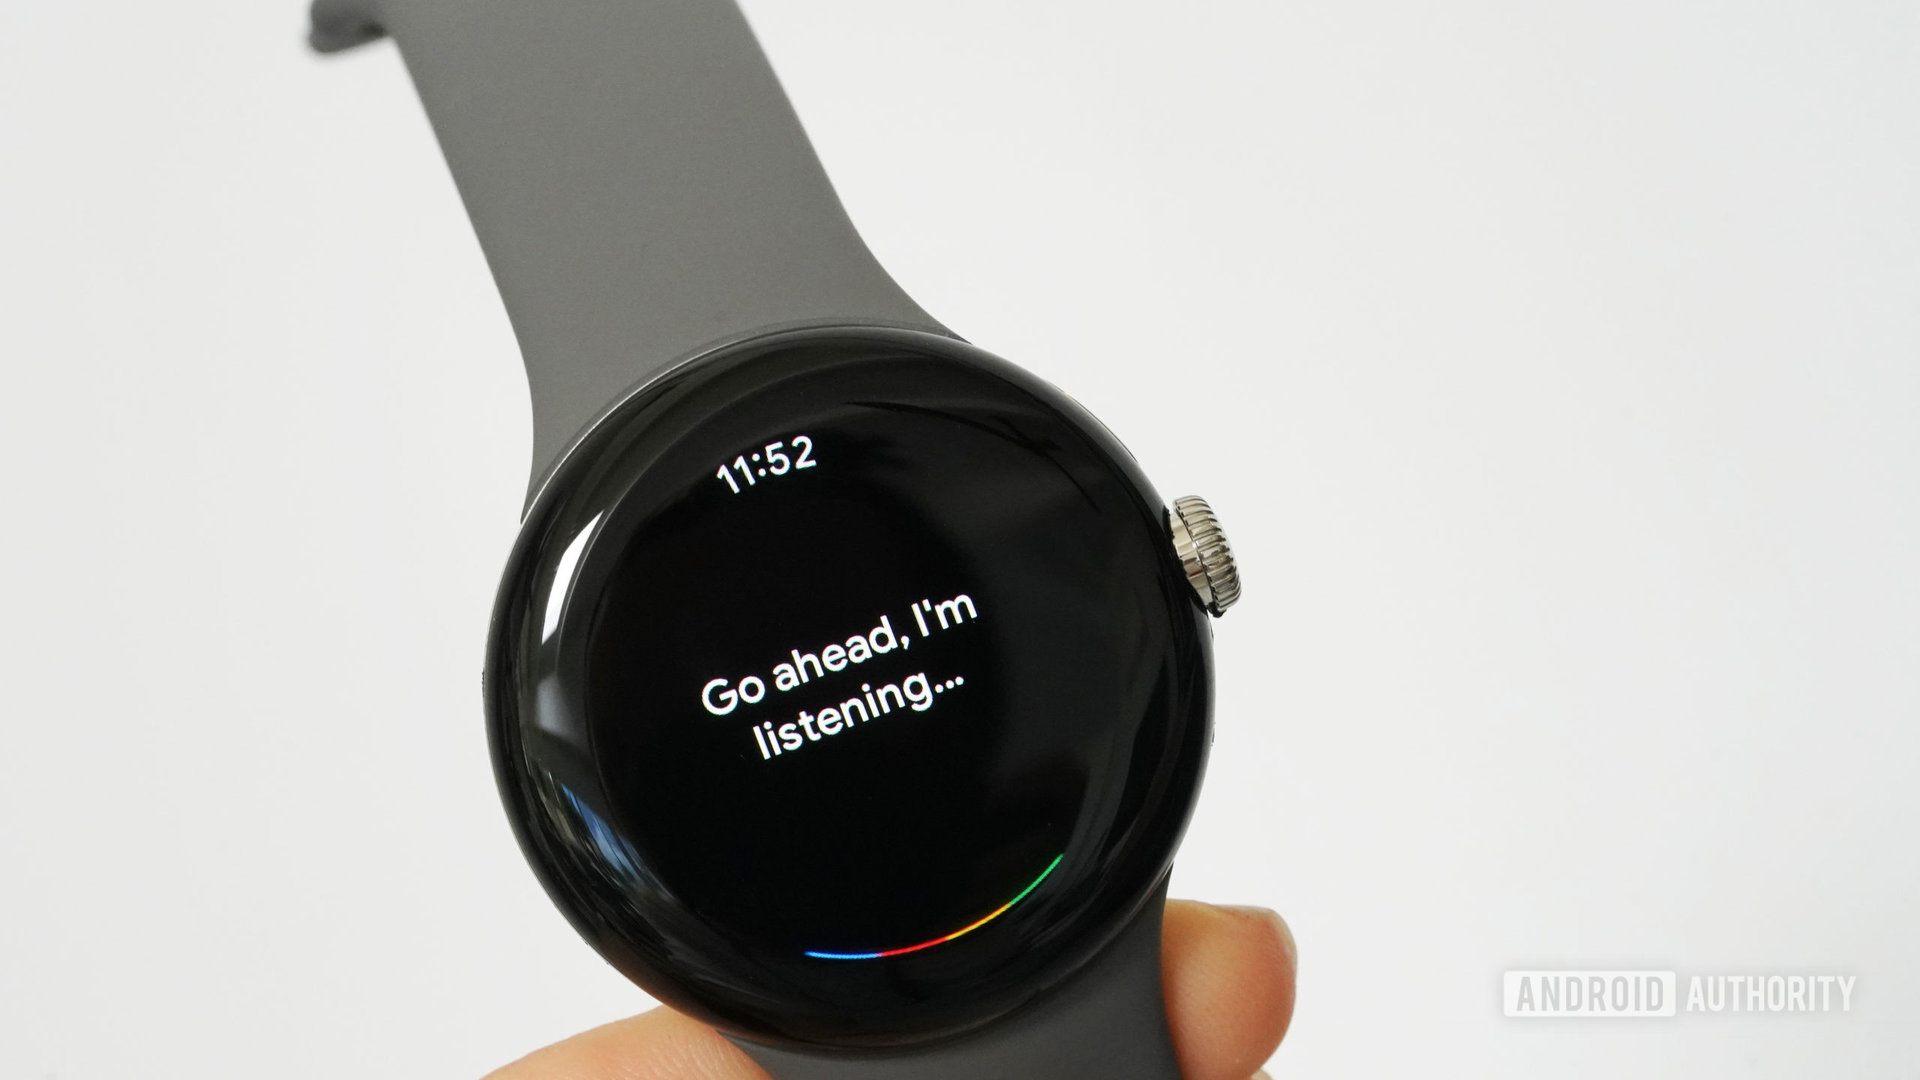 Jam tangan Google Pixel menampilkan Google Assistant